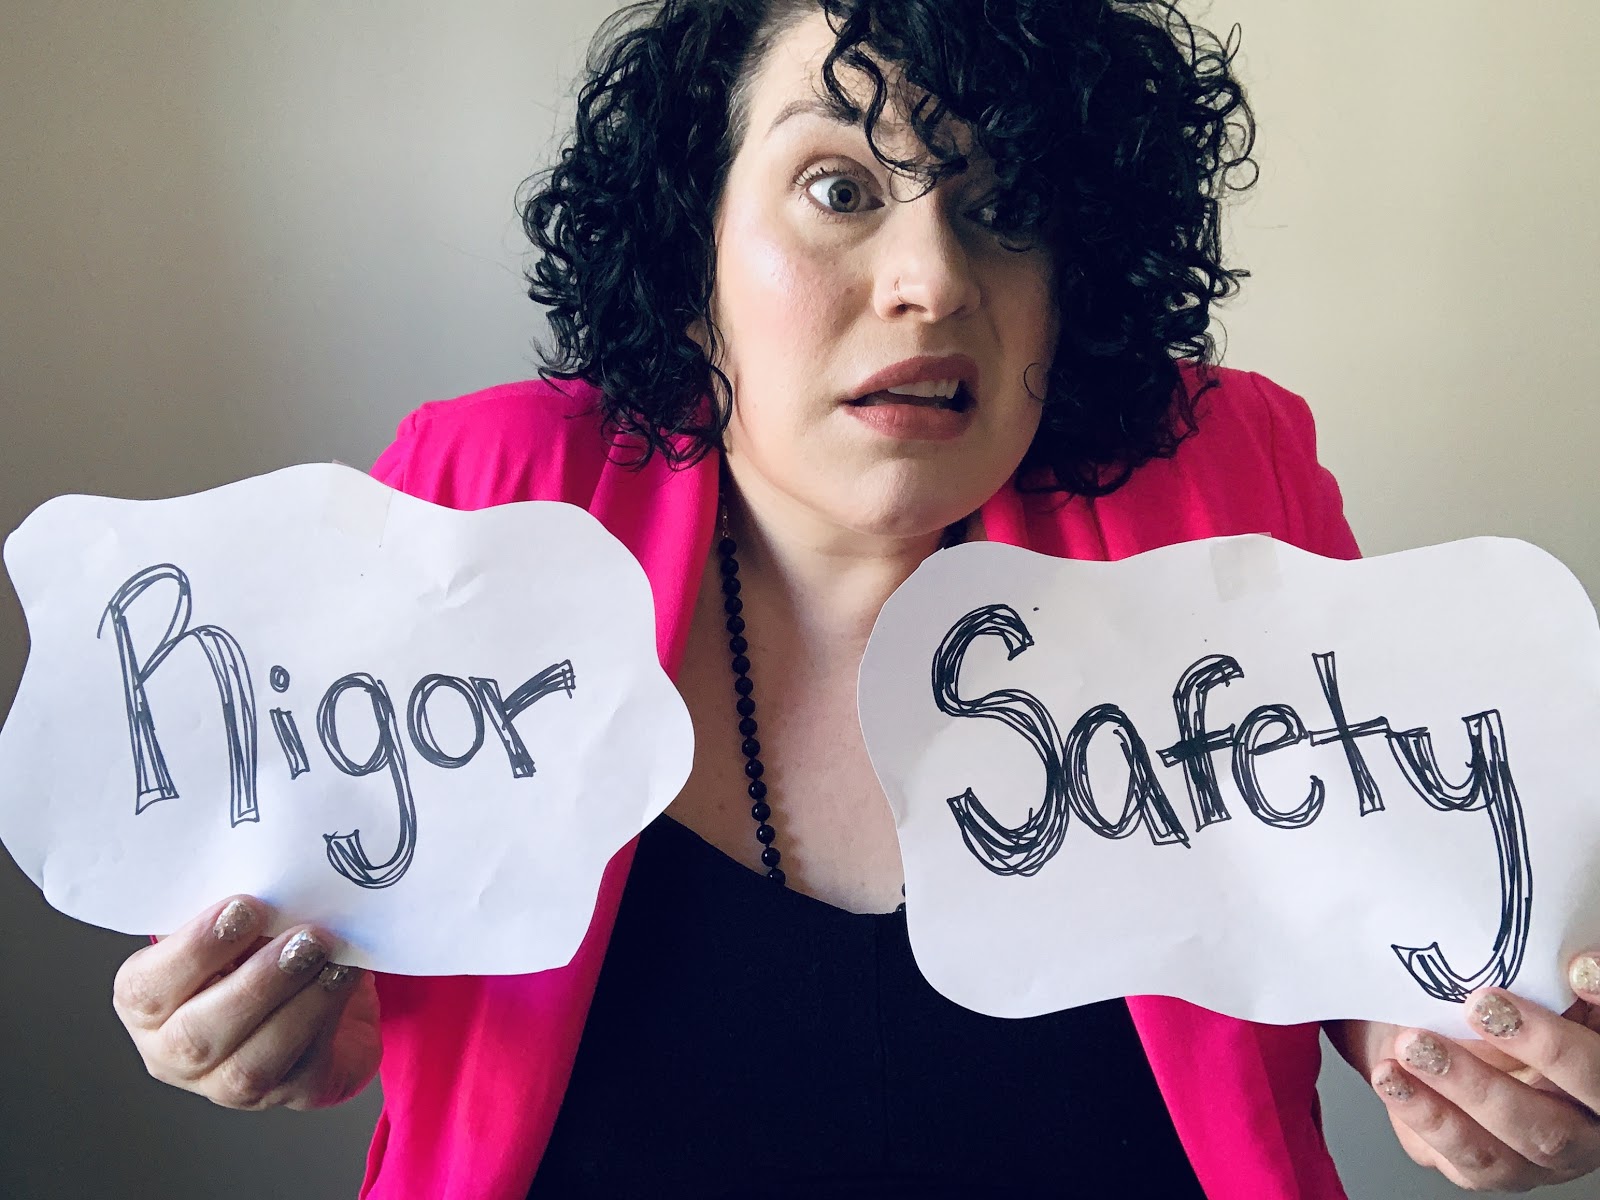 Theatre Programs: Safety versus Rigor